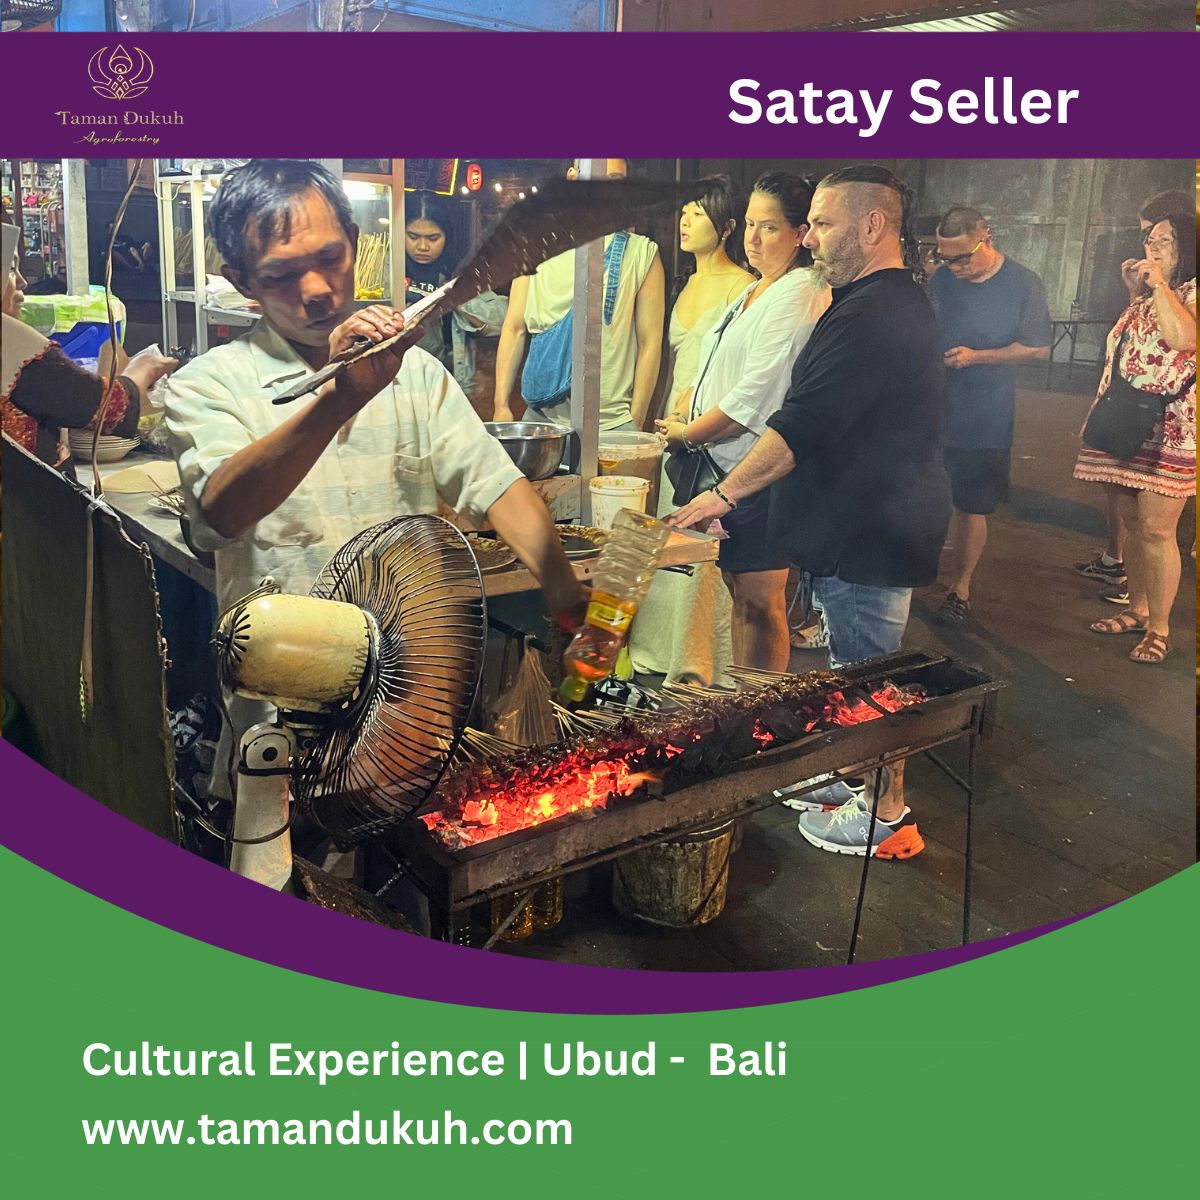 Taman Dukuh Food Tours - satay seller